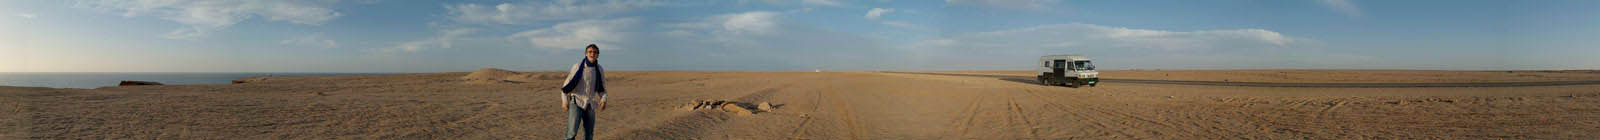 Western Sahara Panorama, road, desert, sea, MB307